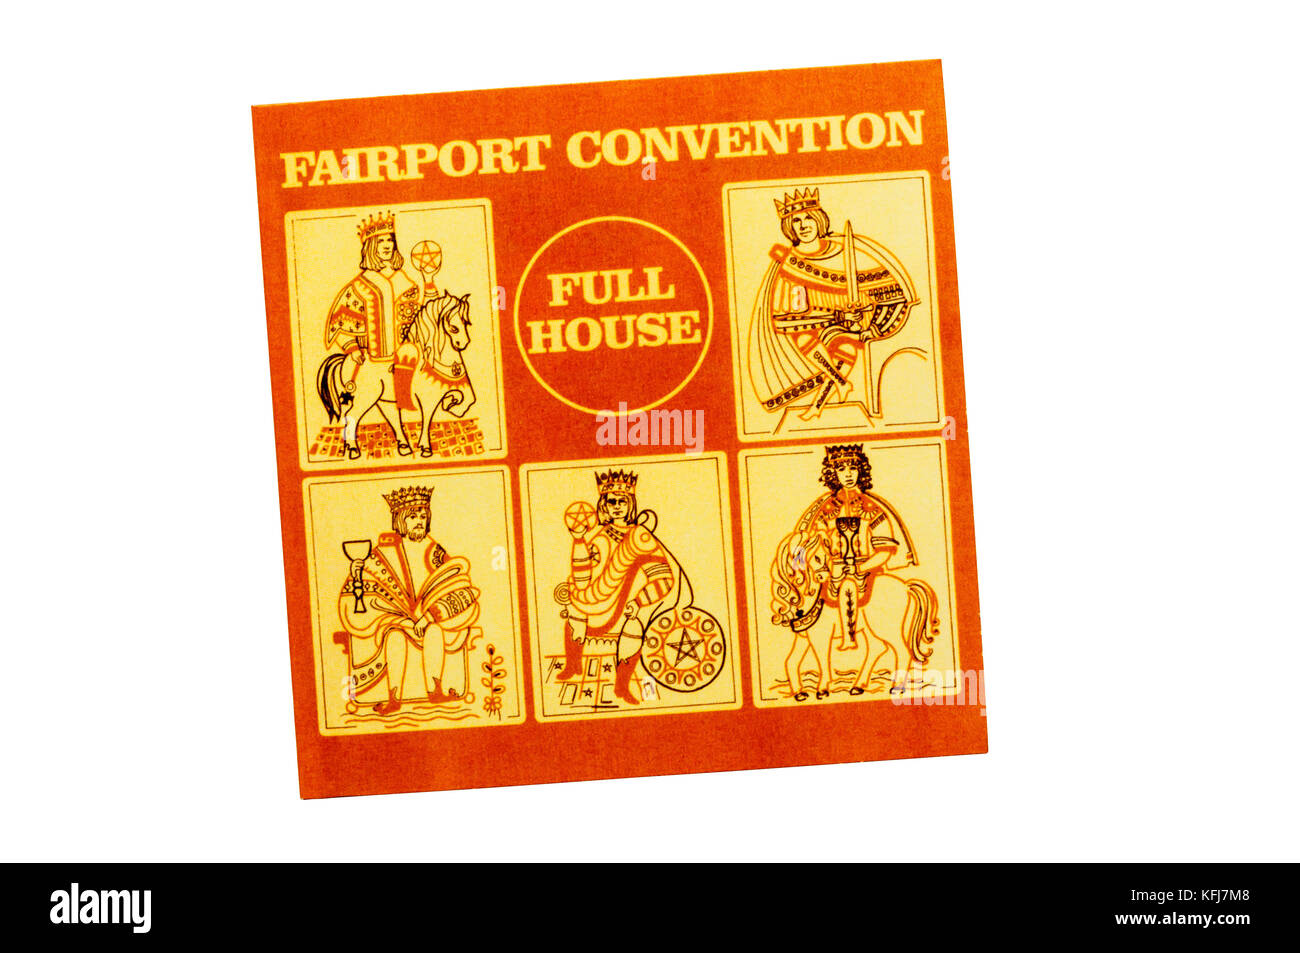 Full House est le cinquième album du groupe de rock folk britannique Fairport Convention. Publié en 1970. Banque D'Images